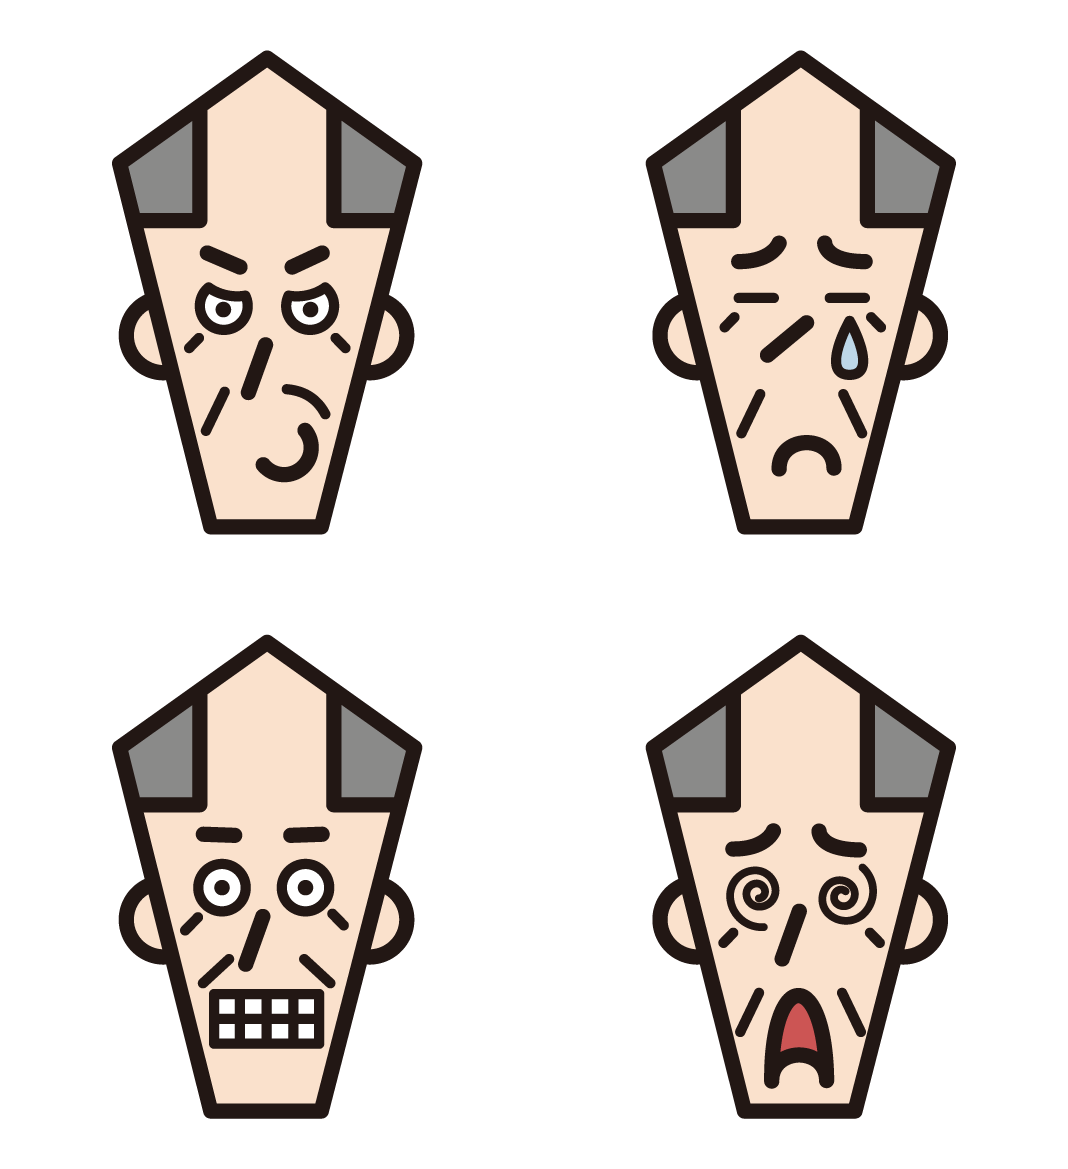 할아버지의 다양한 얼굴 표정 (숱이 많은 머리카락)의 3 가지 삽화